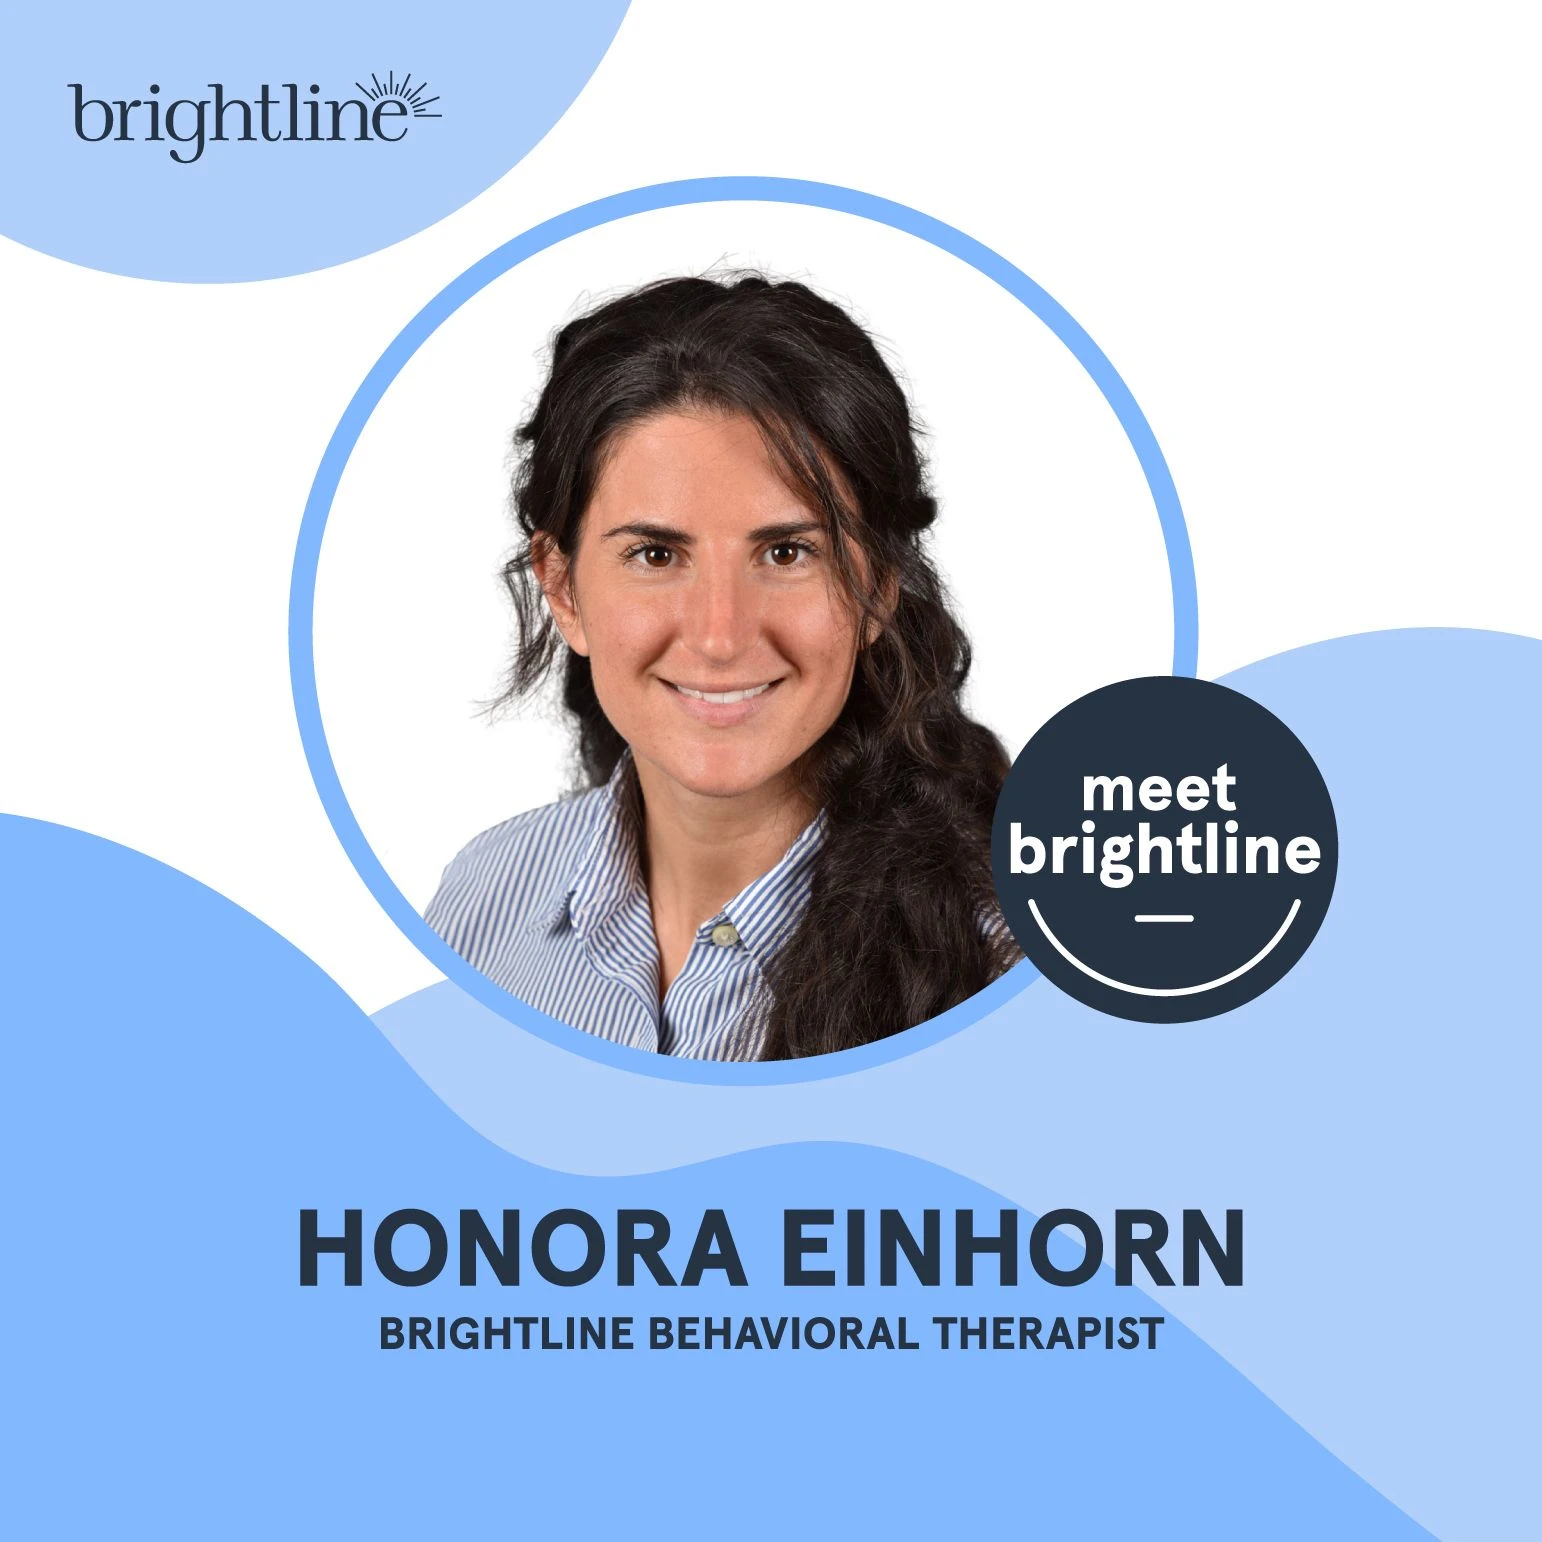 Honora Einhorn Brightline behavioral therapist